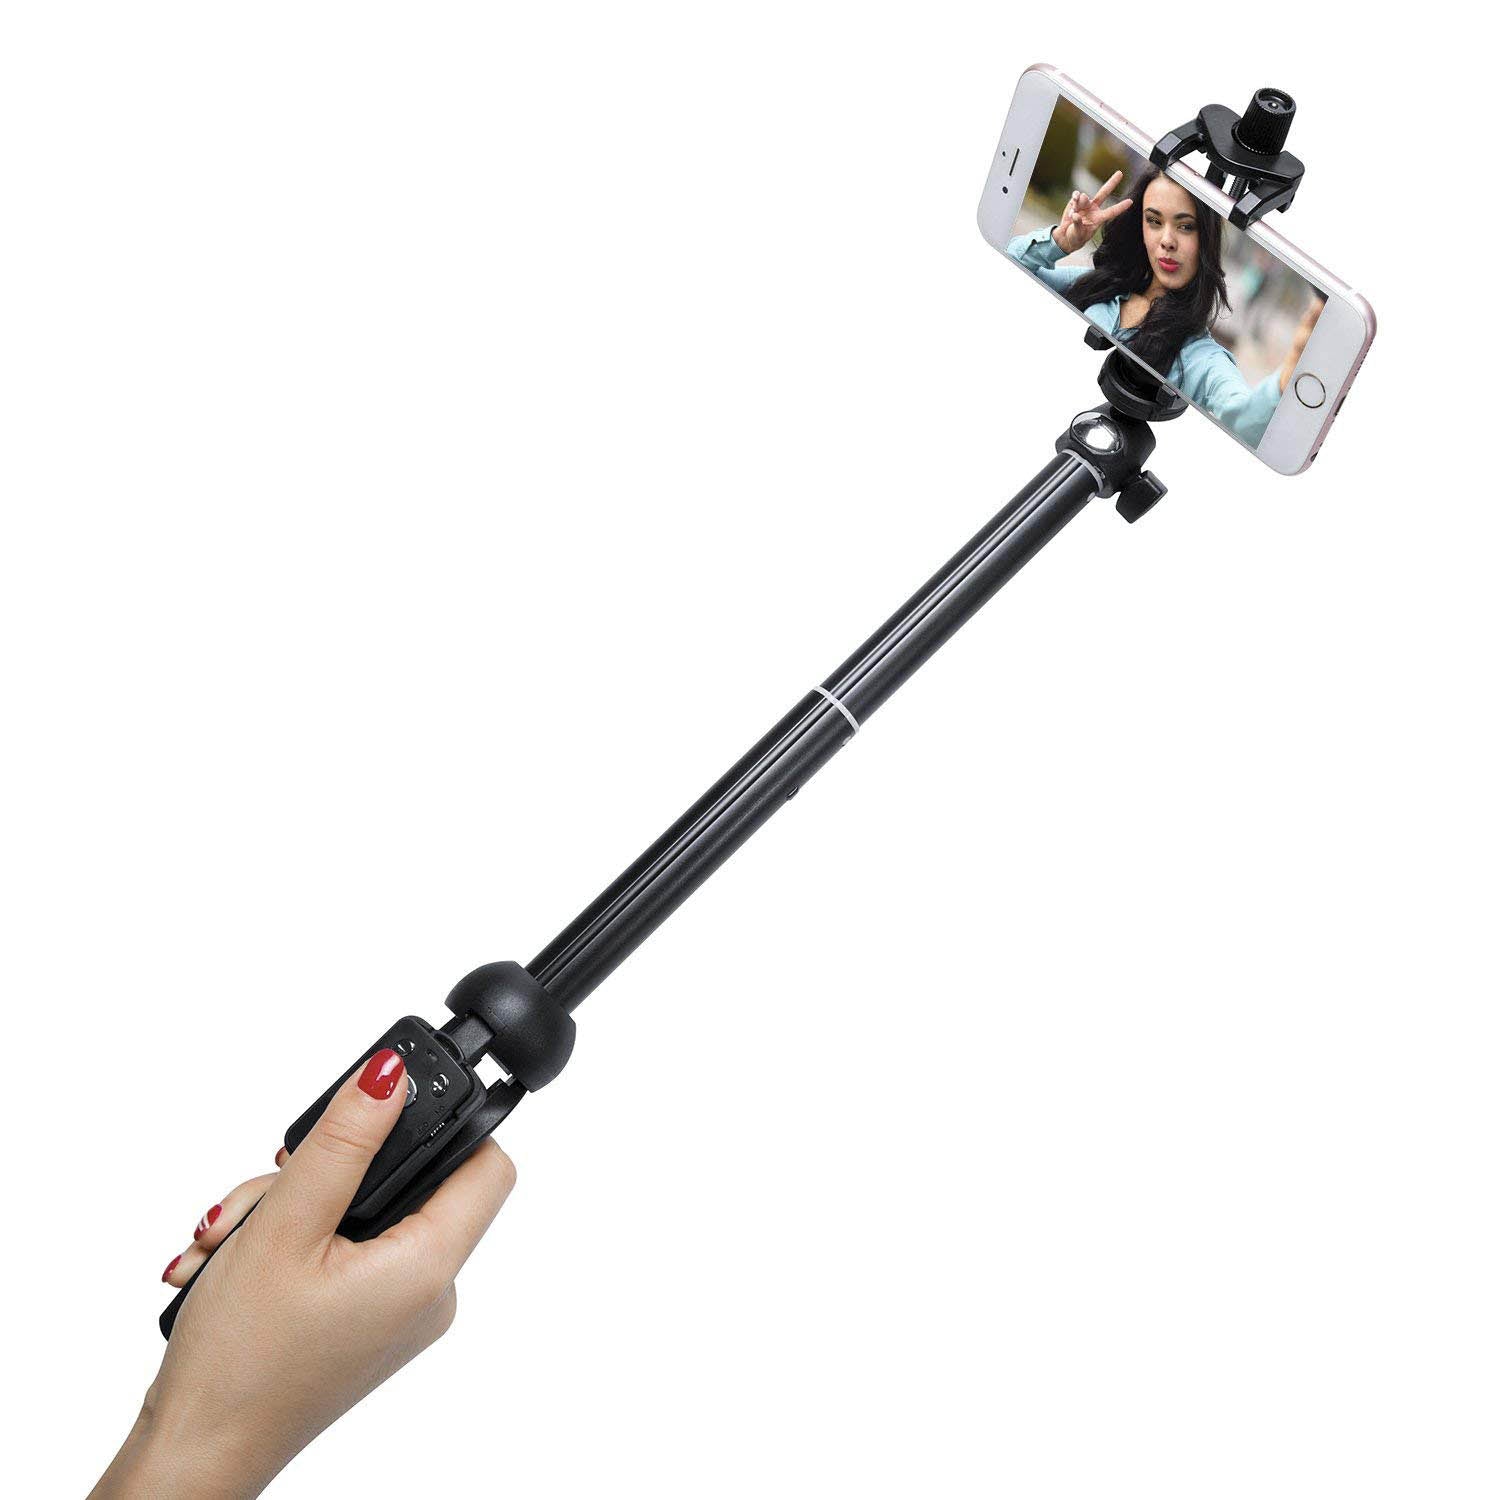 Bluetooth Selfie Stick Tripod with Wireless Remote 40